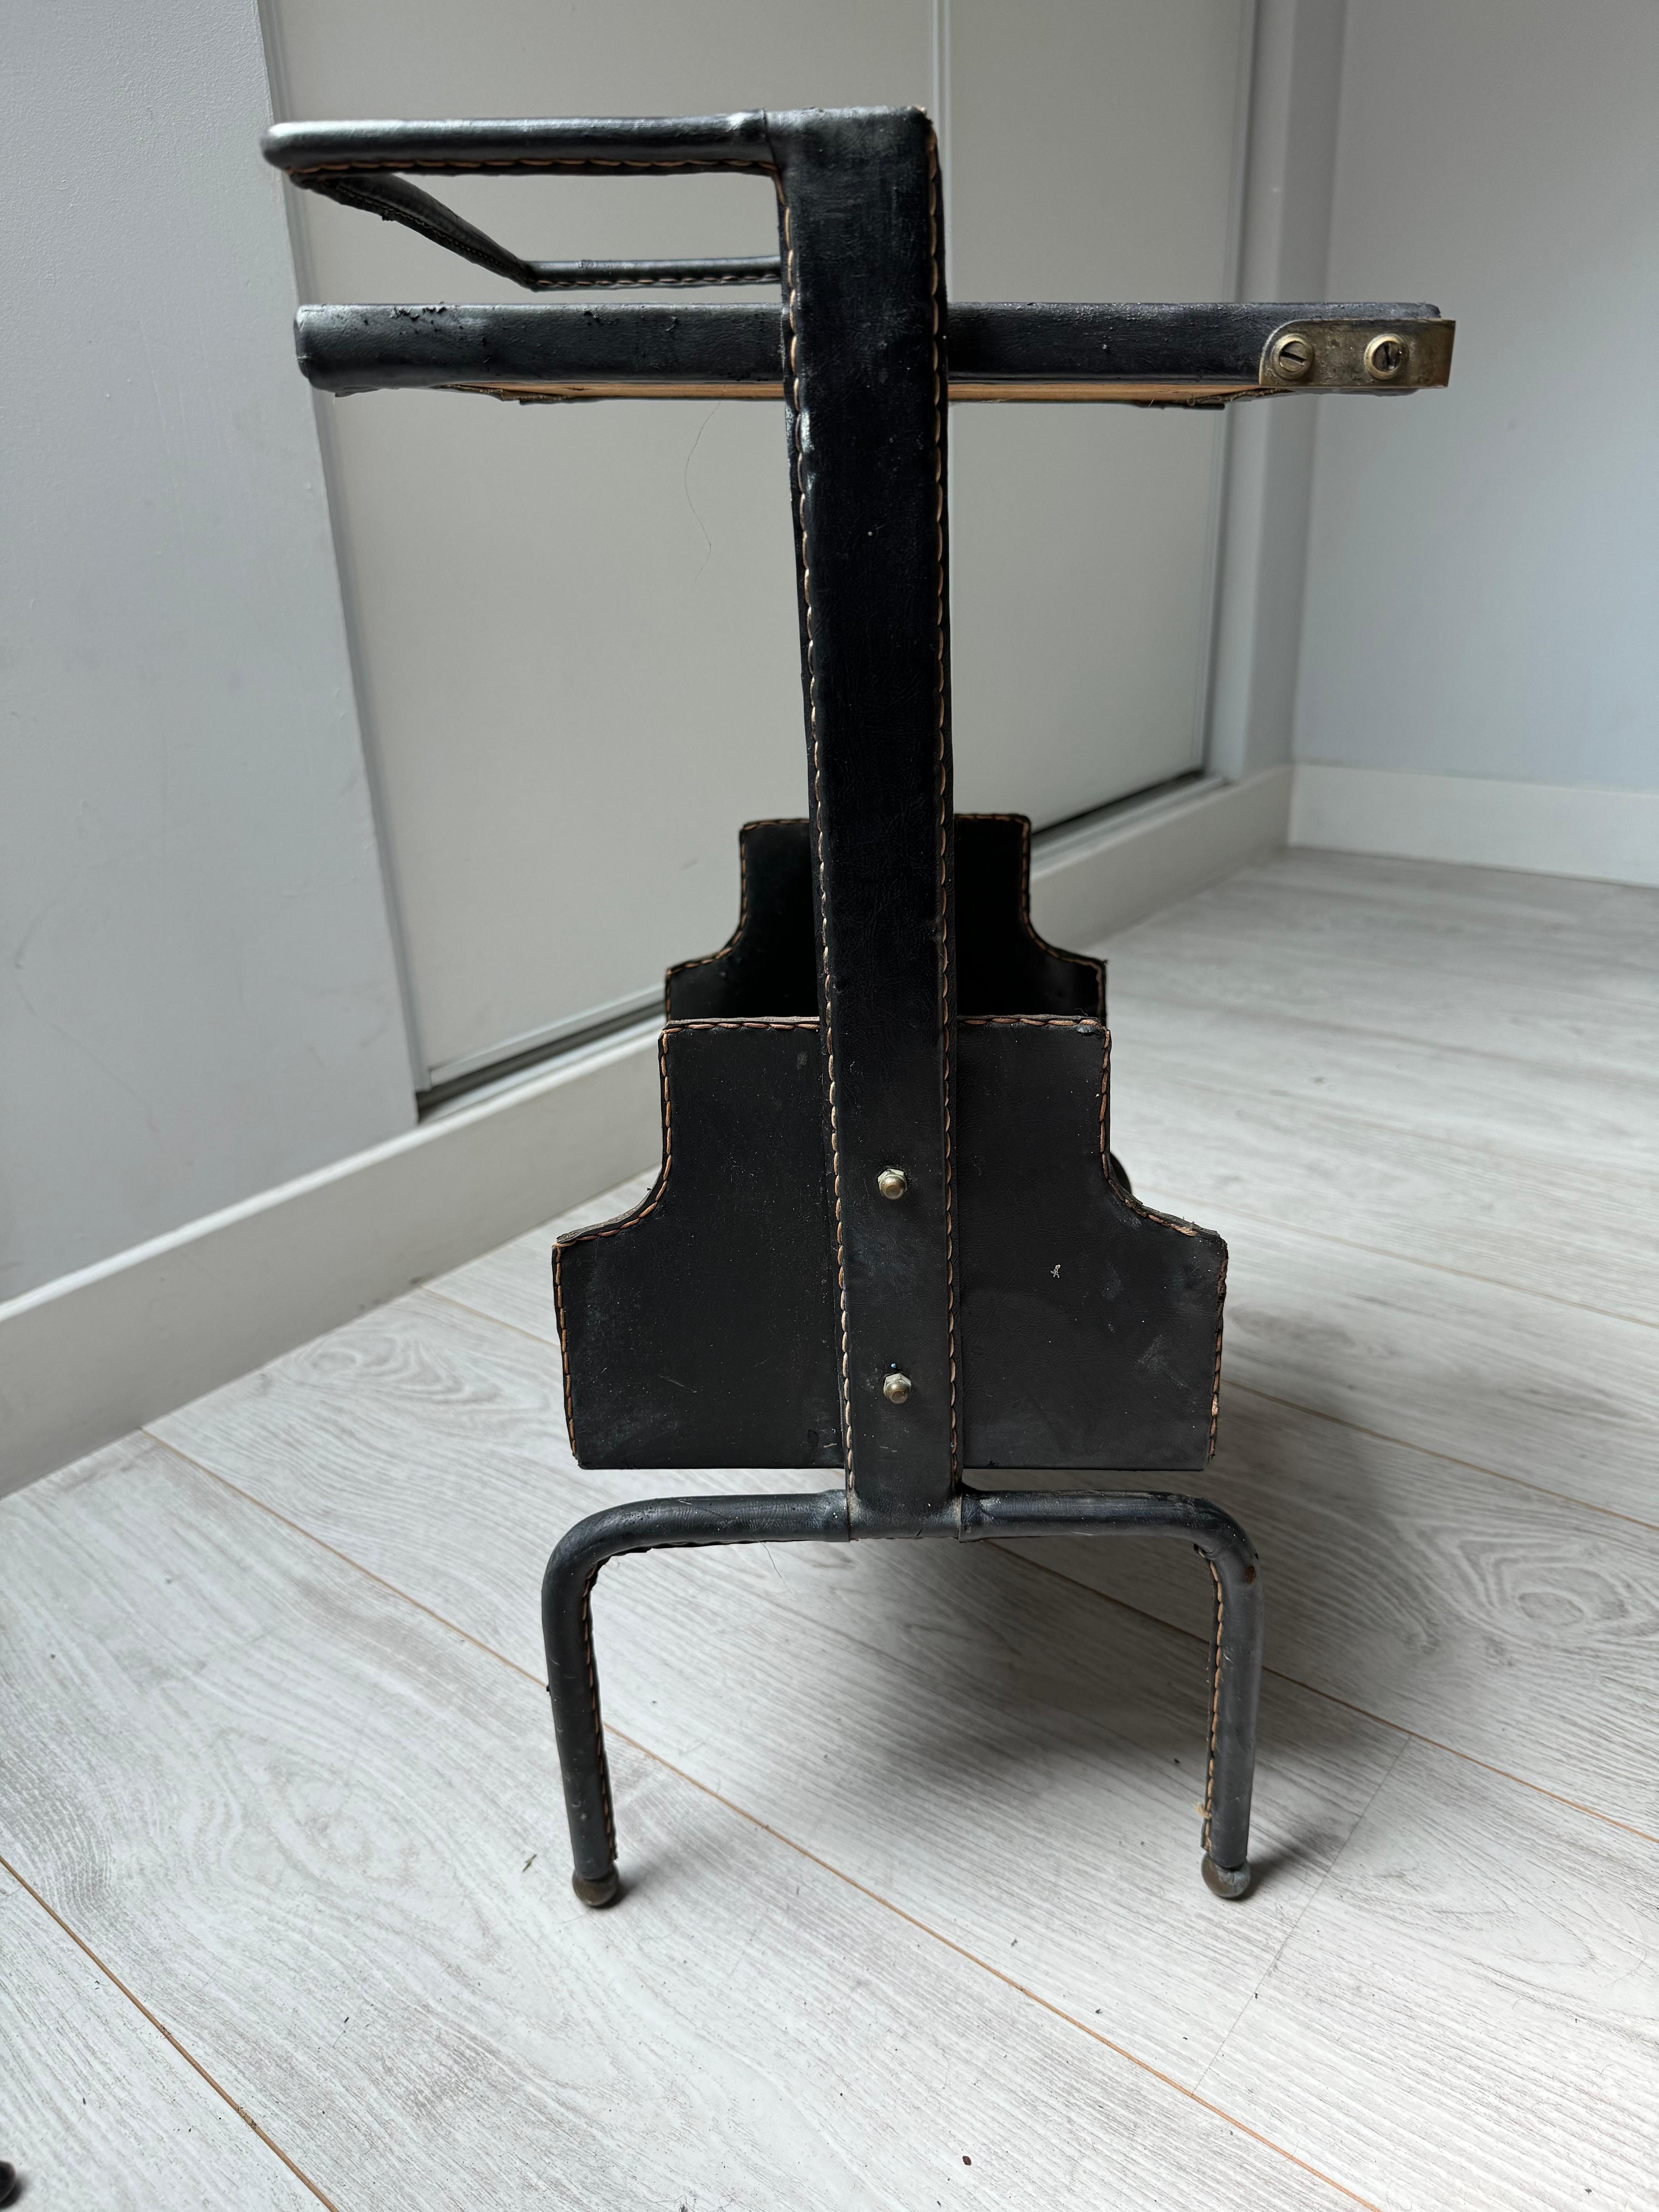 Jacques ADNET (1900-1984) 
Kleiner Beistelltisch mit doppeltem Lederbezug, Messingbeschlägen und Kontrastnähten
Ursprünglich als Telefontisch entworfen